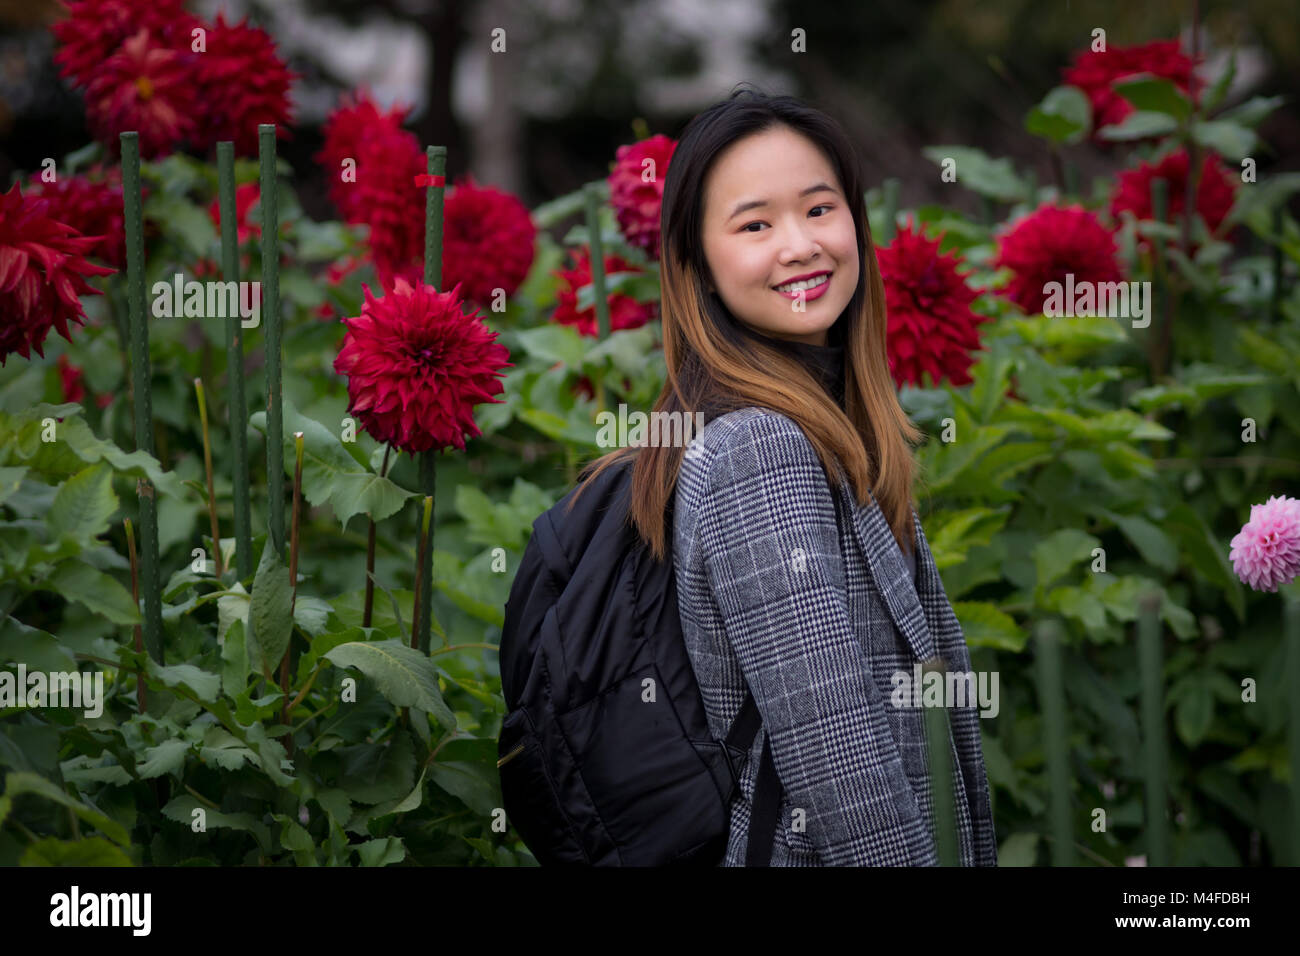 Schöne Frau neben dem roten Blumen in einem japanischen Garten posing Stockfoto